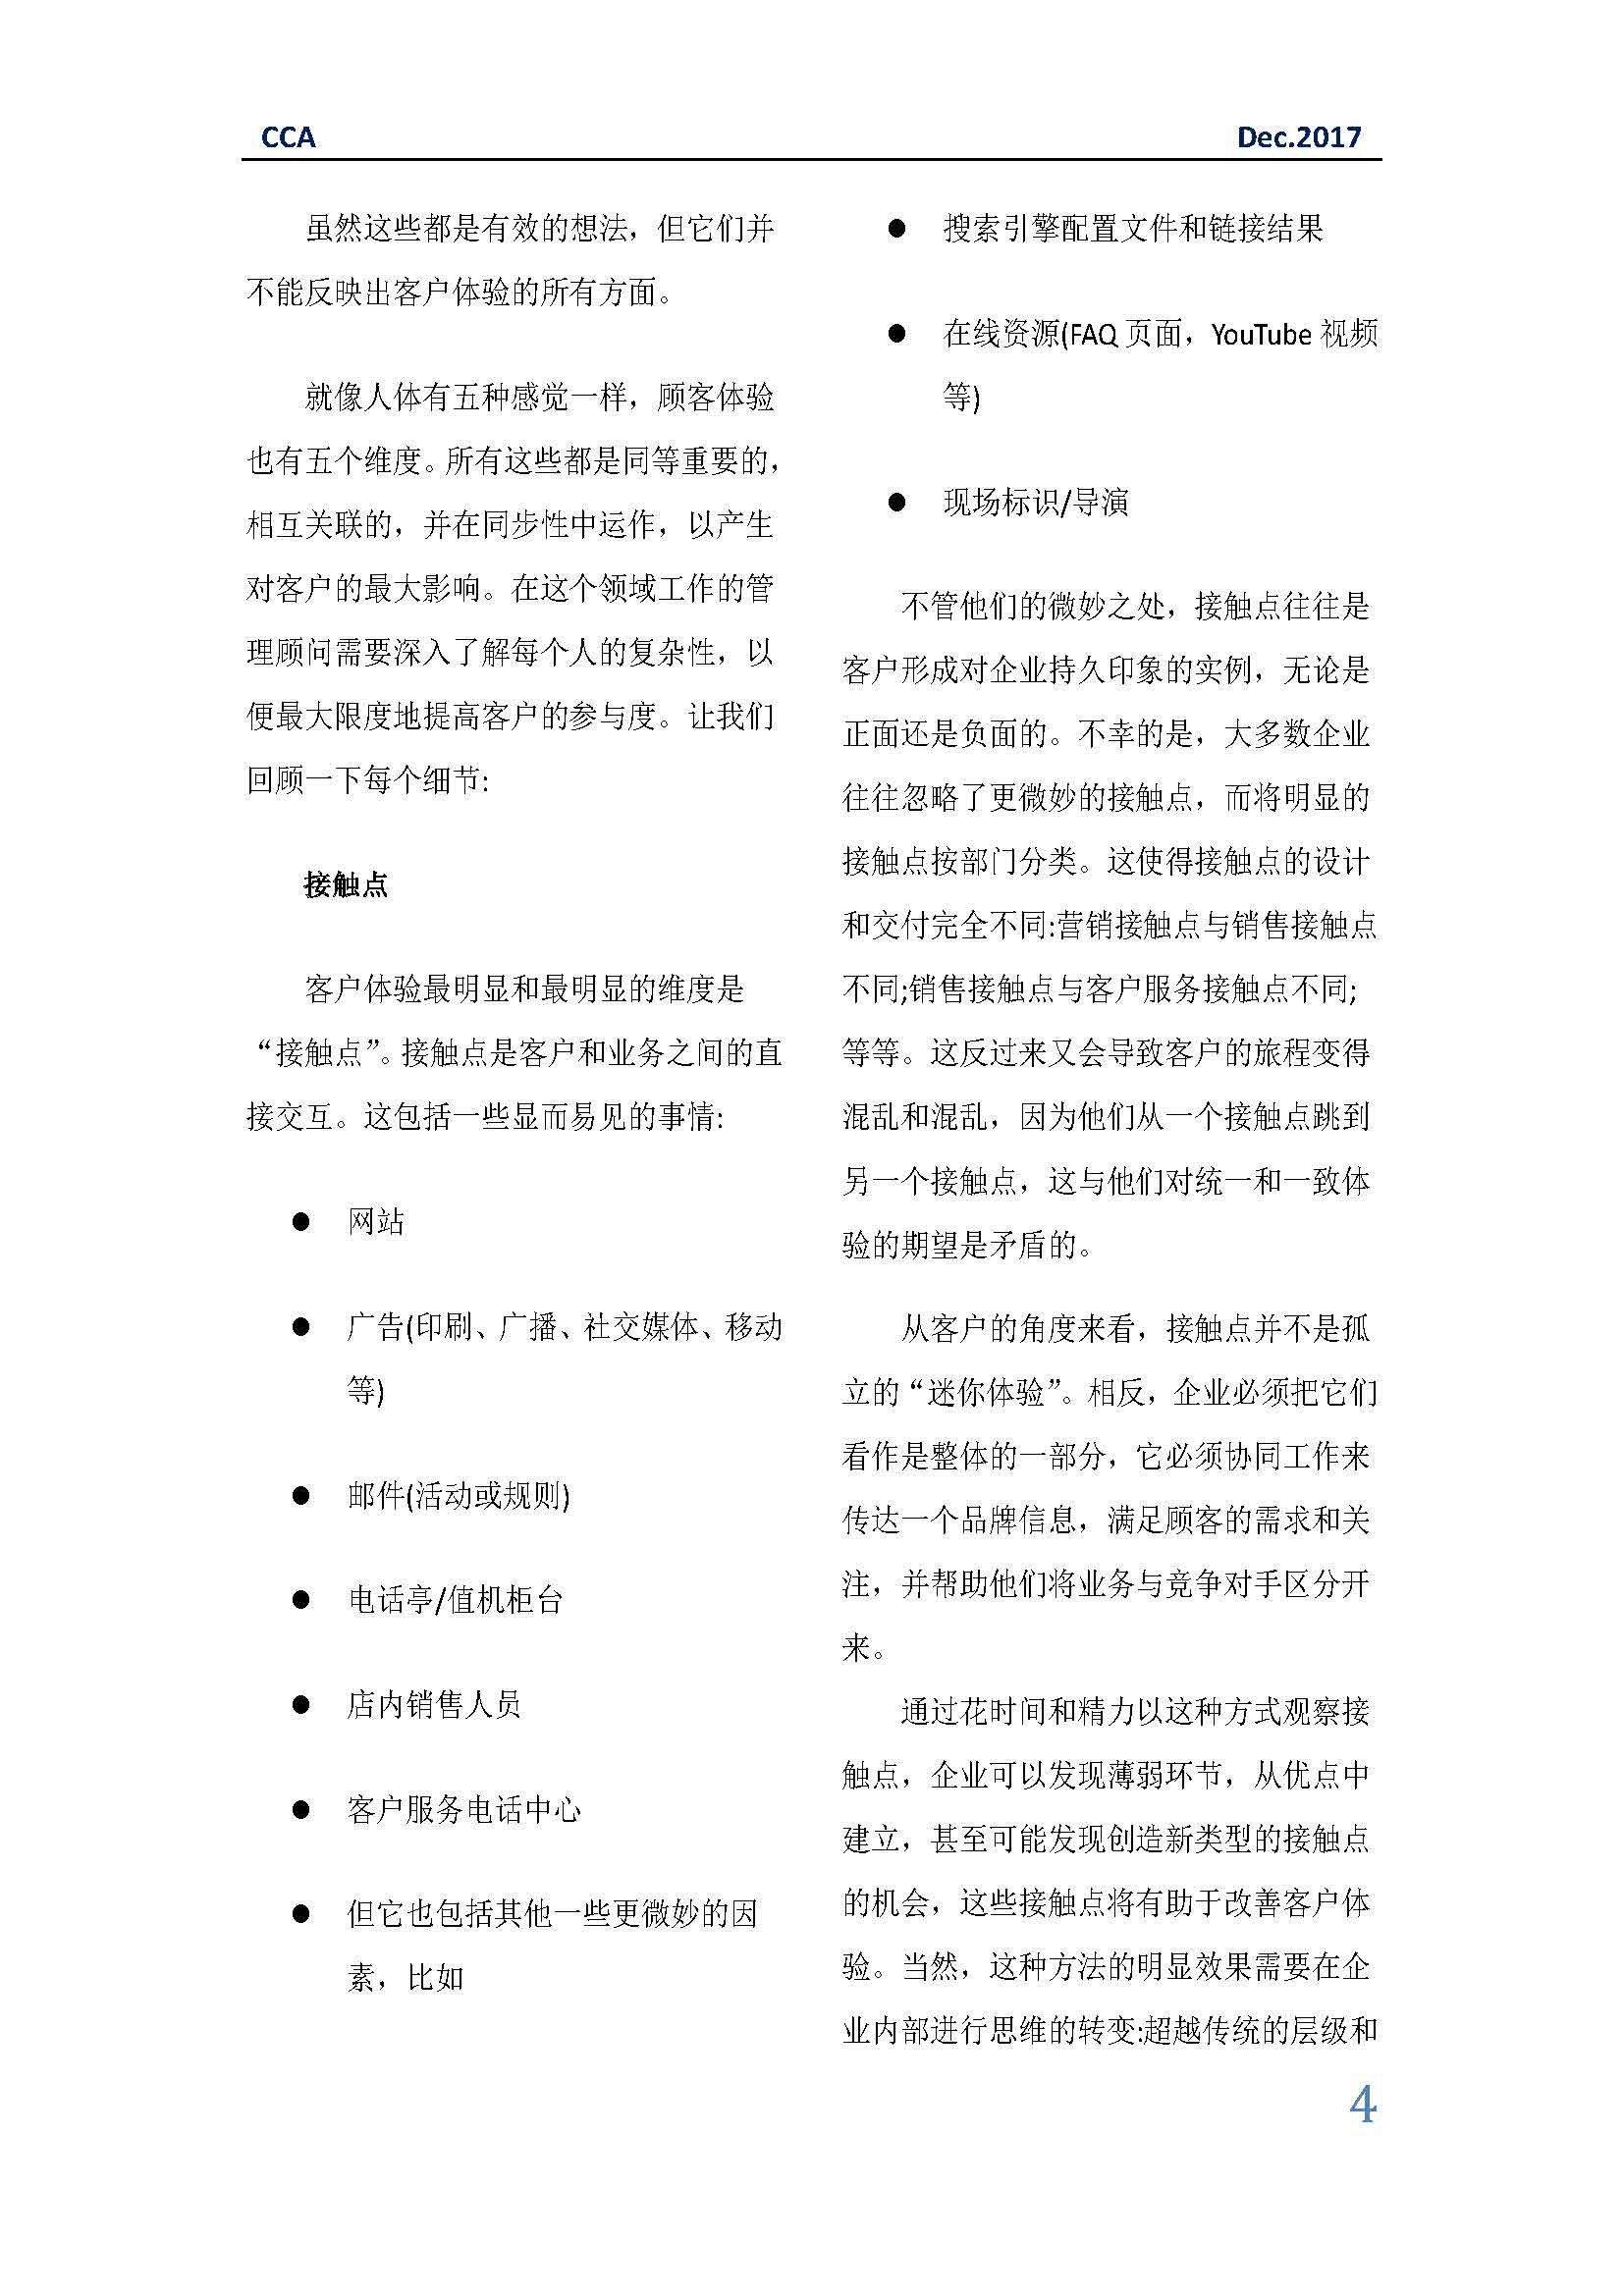 中国科技咨询协会国际快讯（第三十一期）_页面_04.jpg